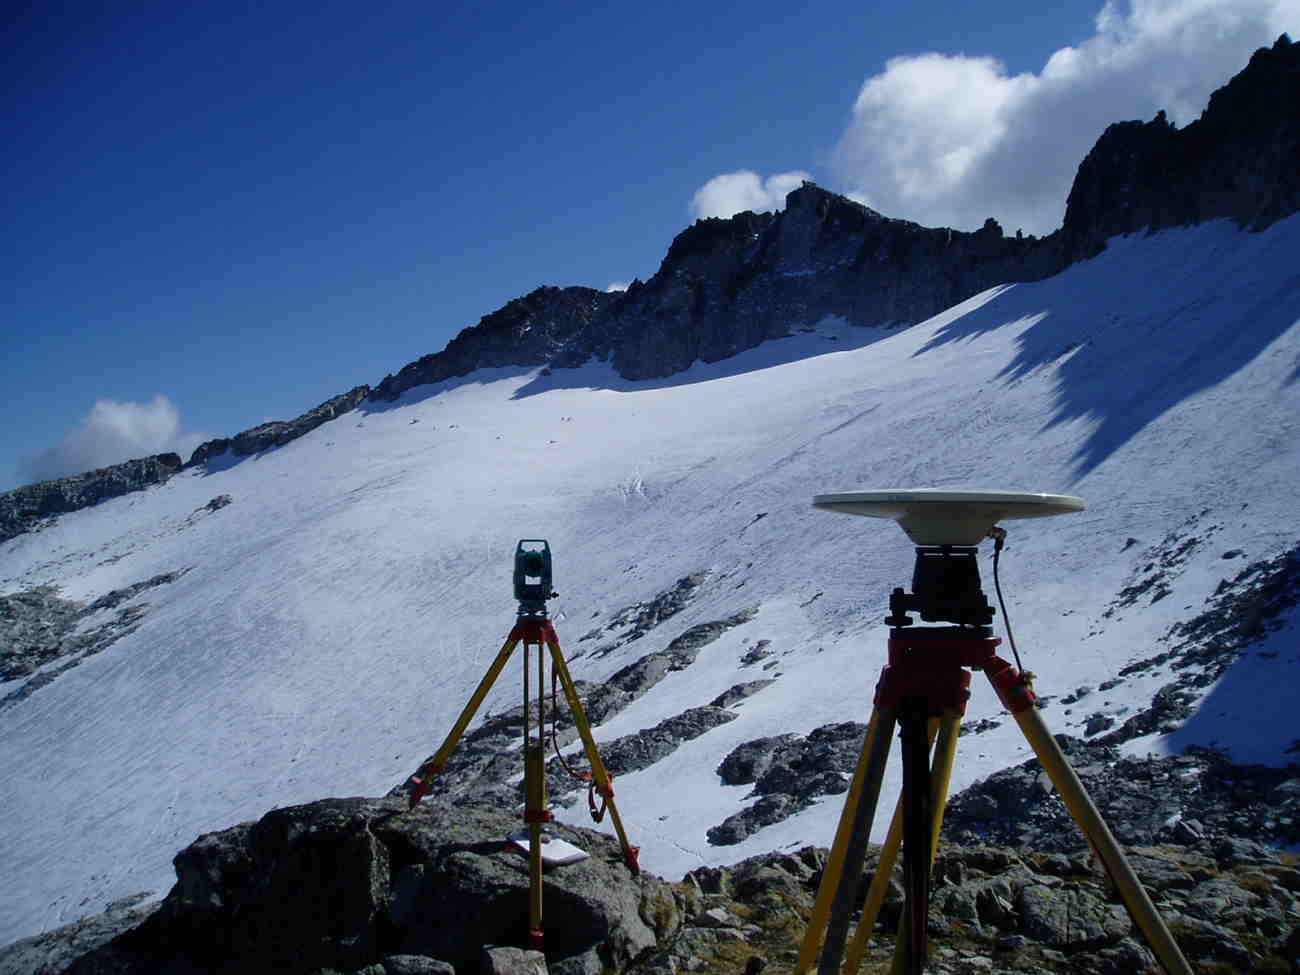 Imagen noticia - 30 años de estudio del balance anual del glaciar de La Maladeta (Huesca)